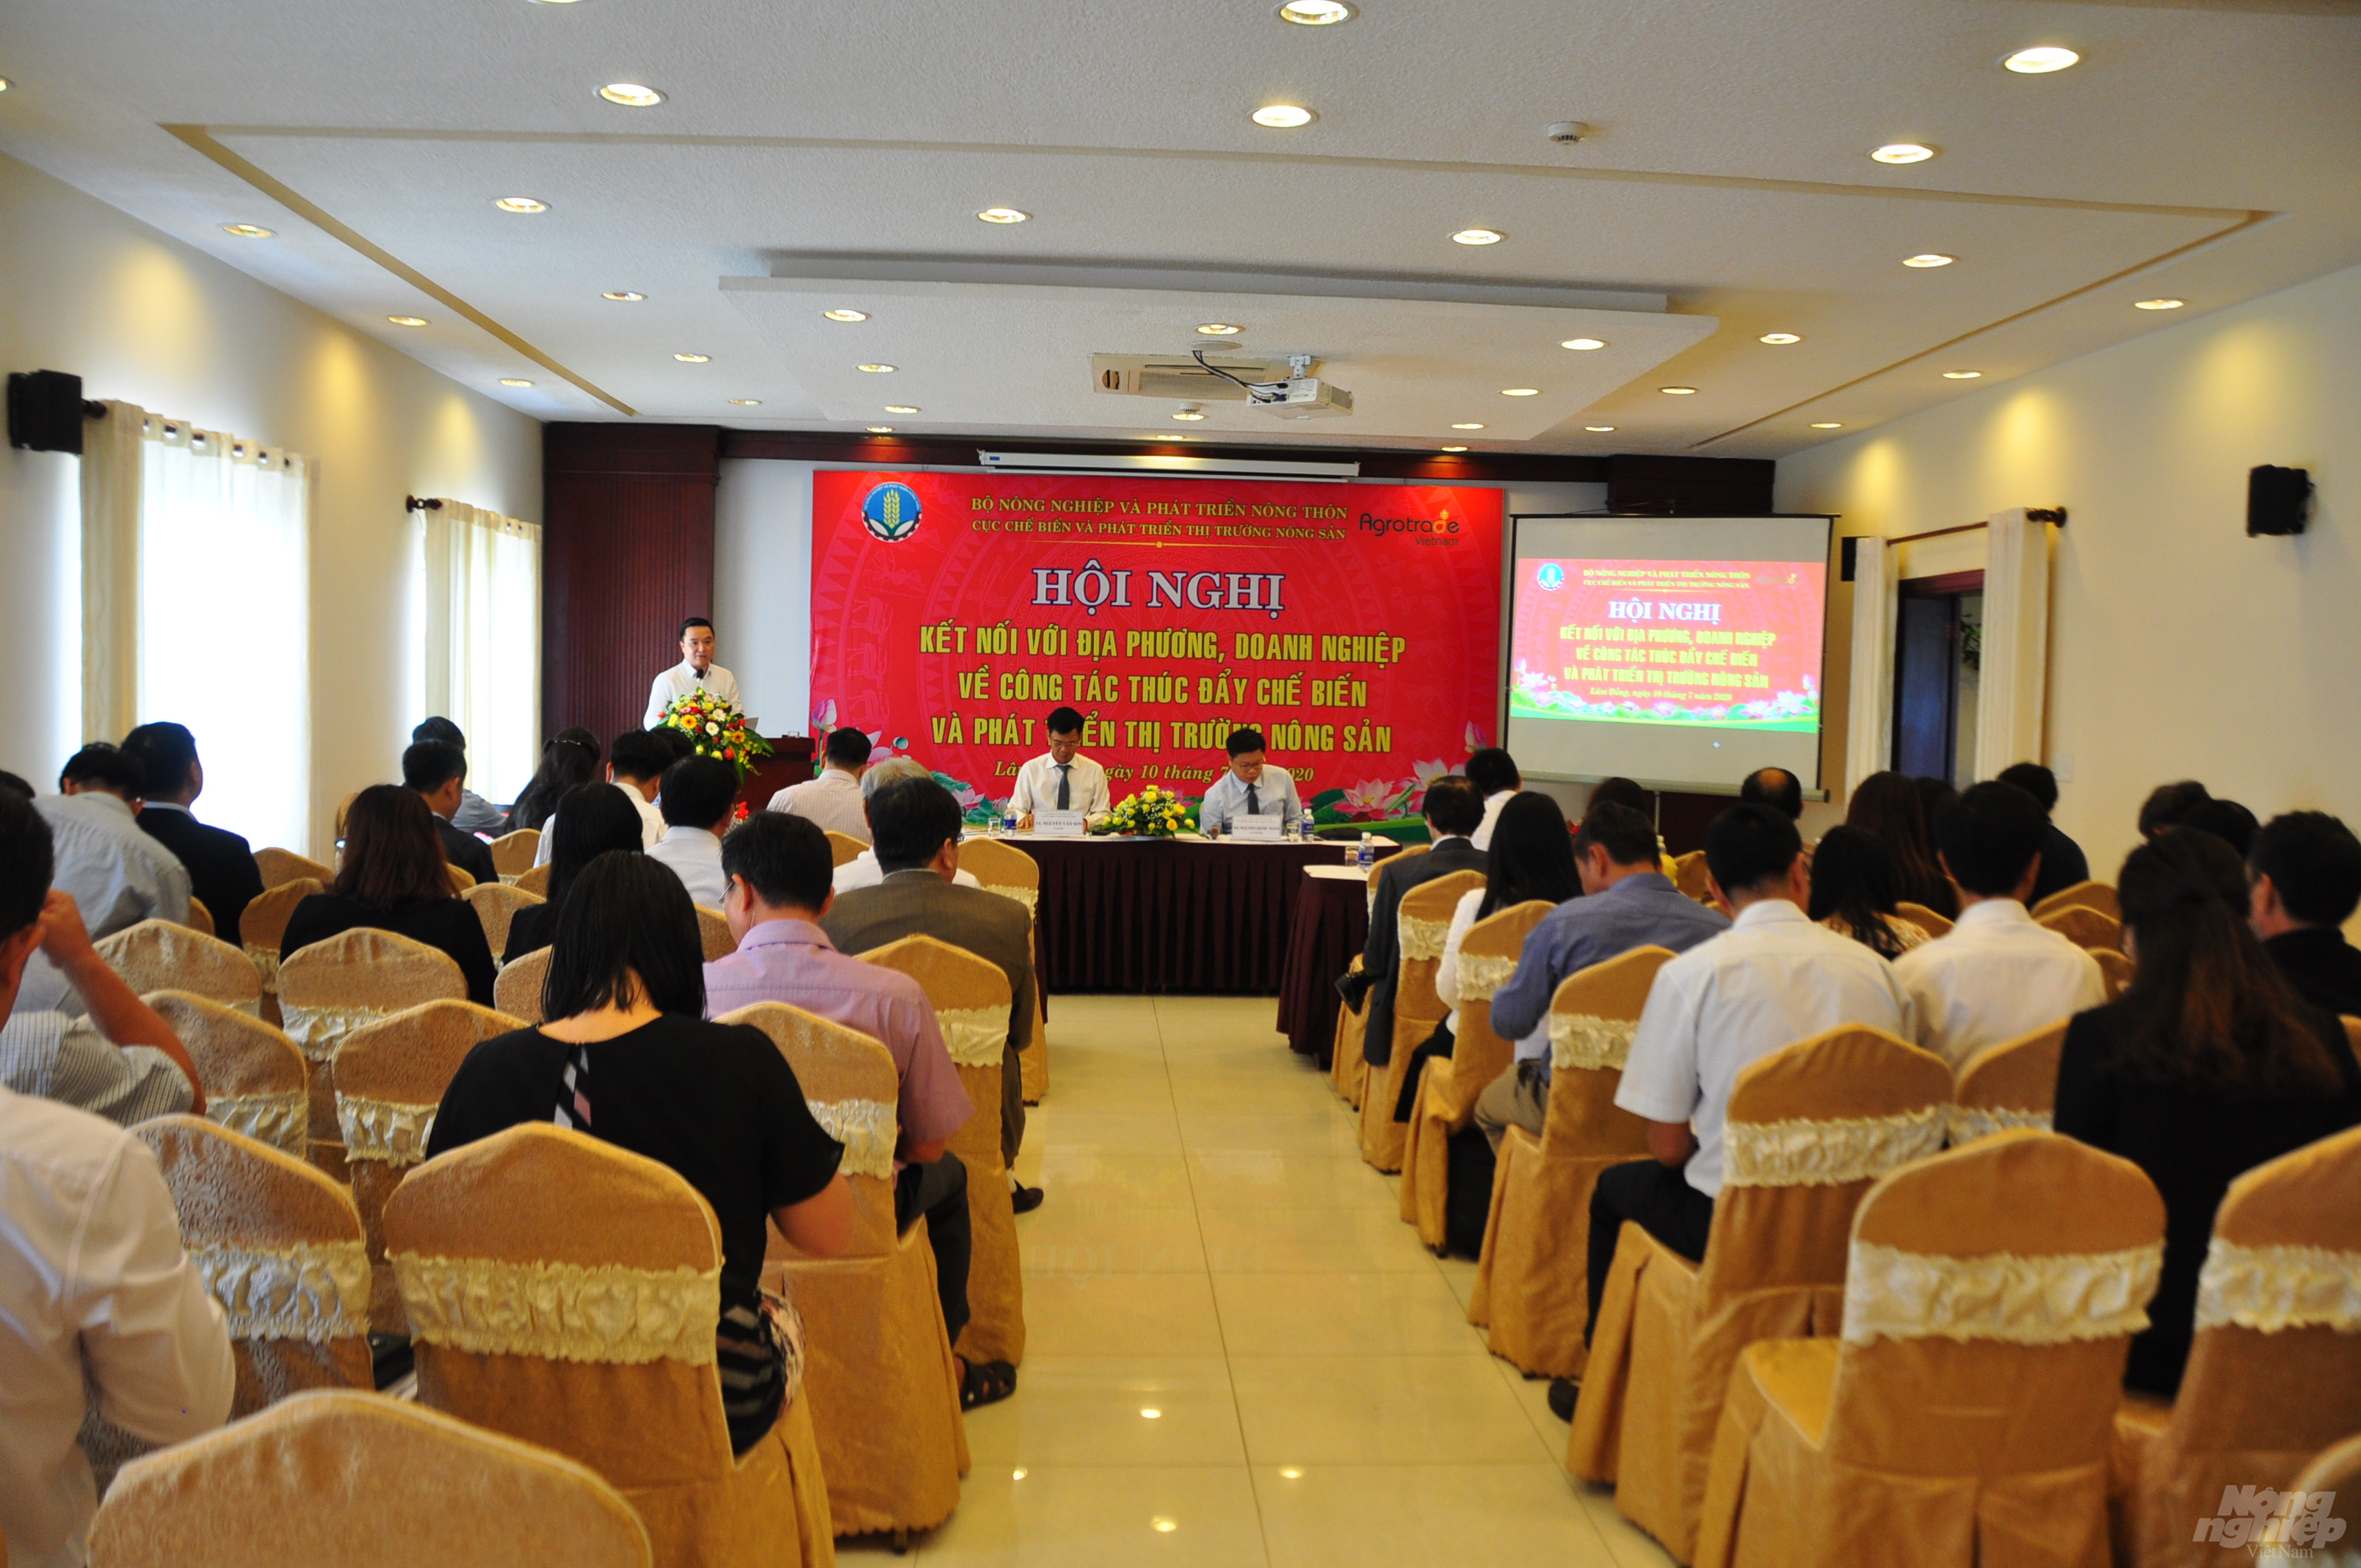 Hội nghị tổ chức sáng 10/7 tại thành phố Đà Lạt, Lâm Đồng. Ảnh: Minh Hậu.